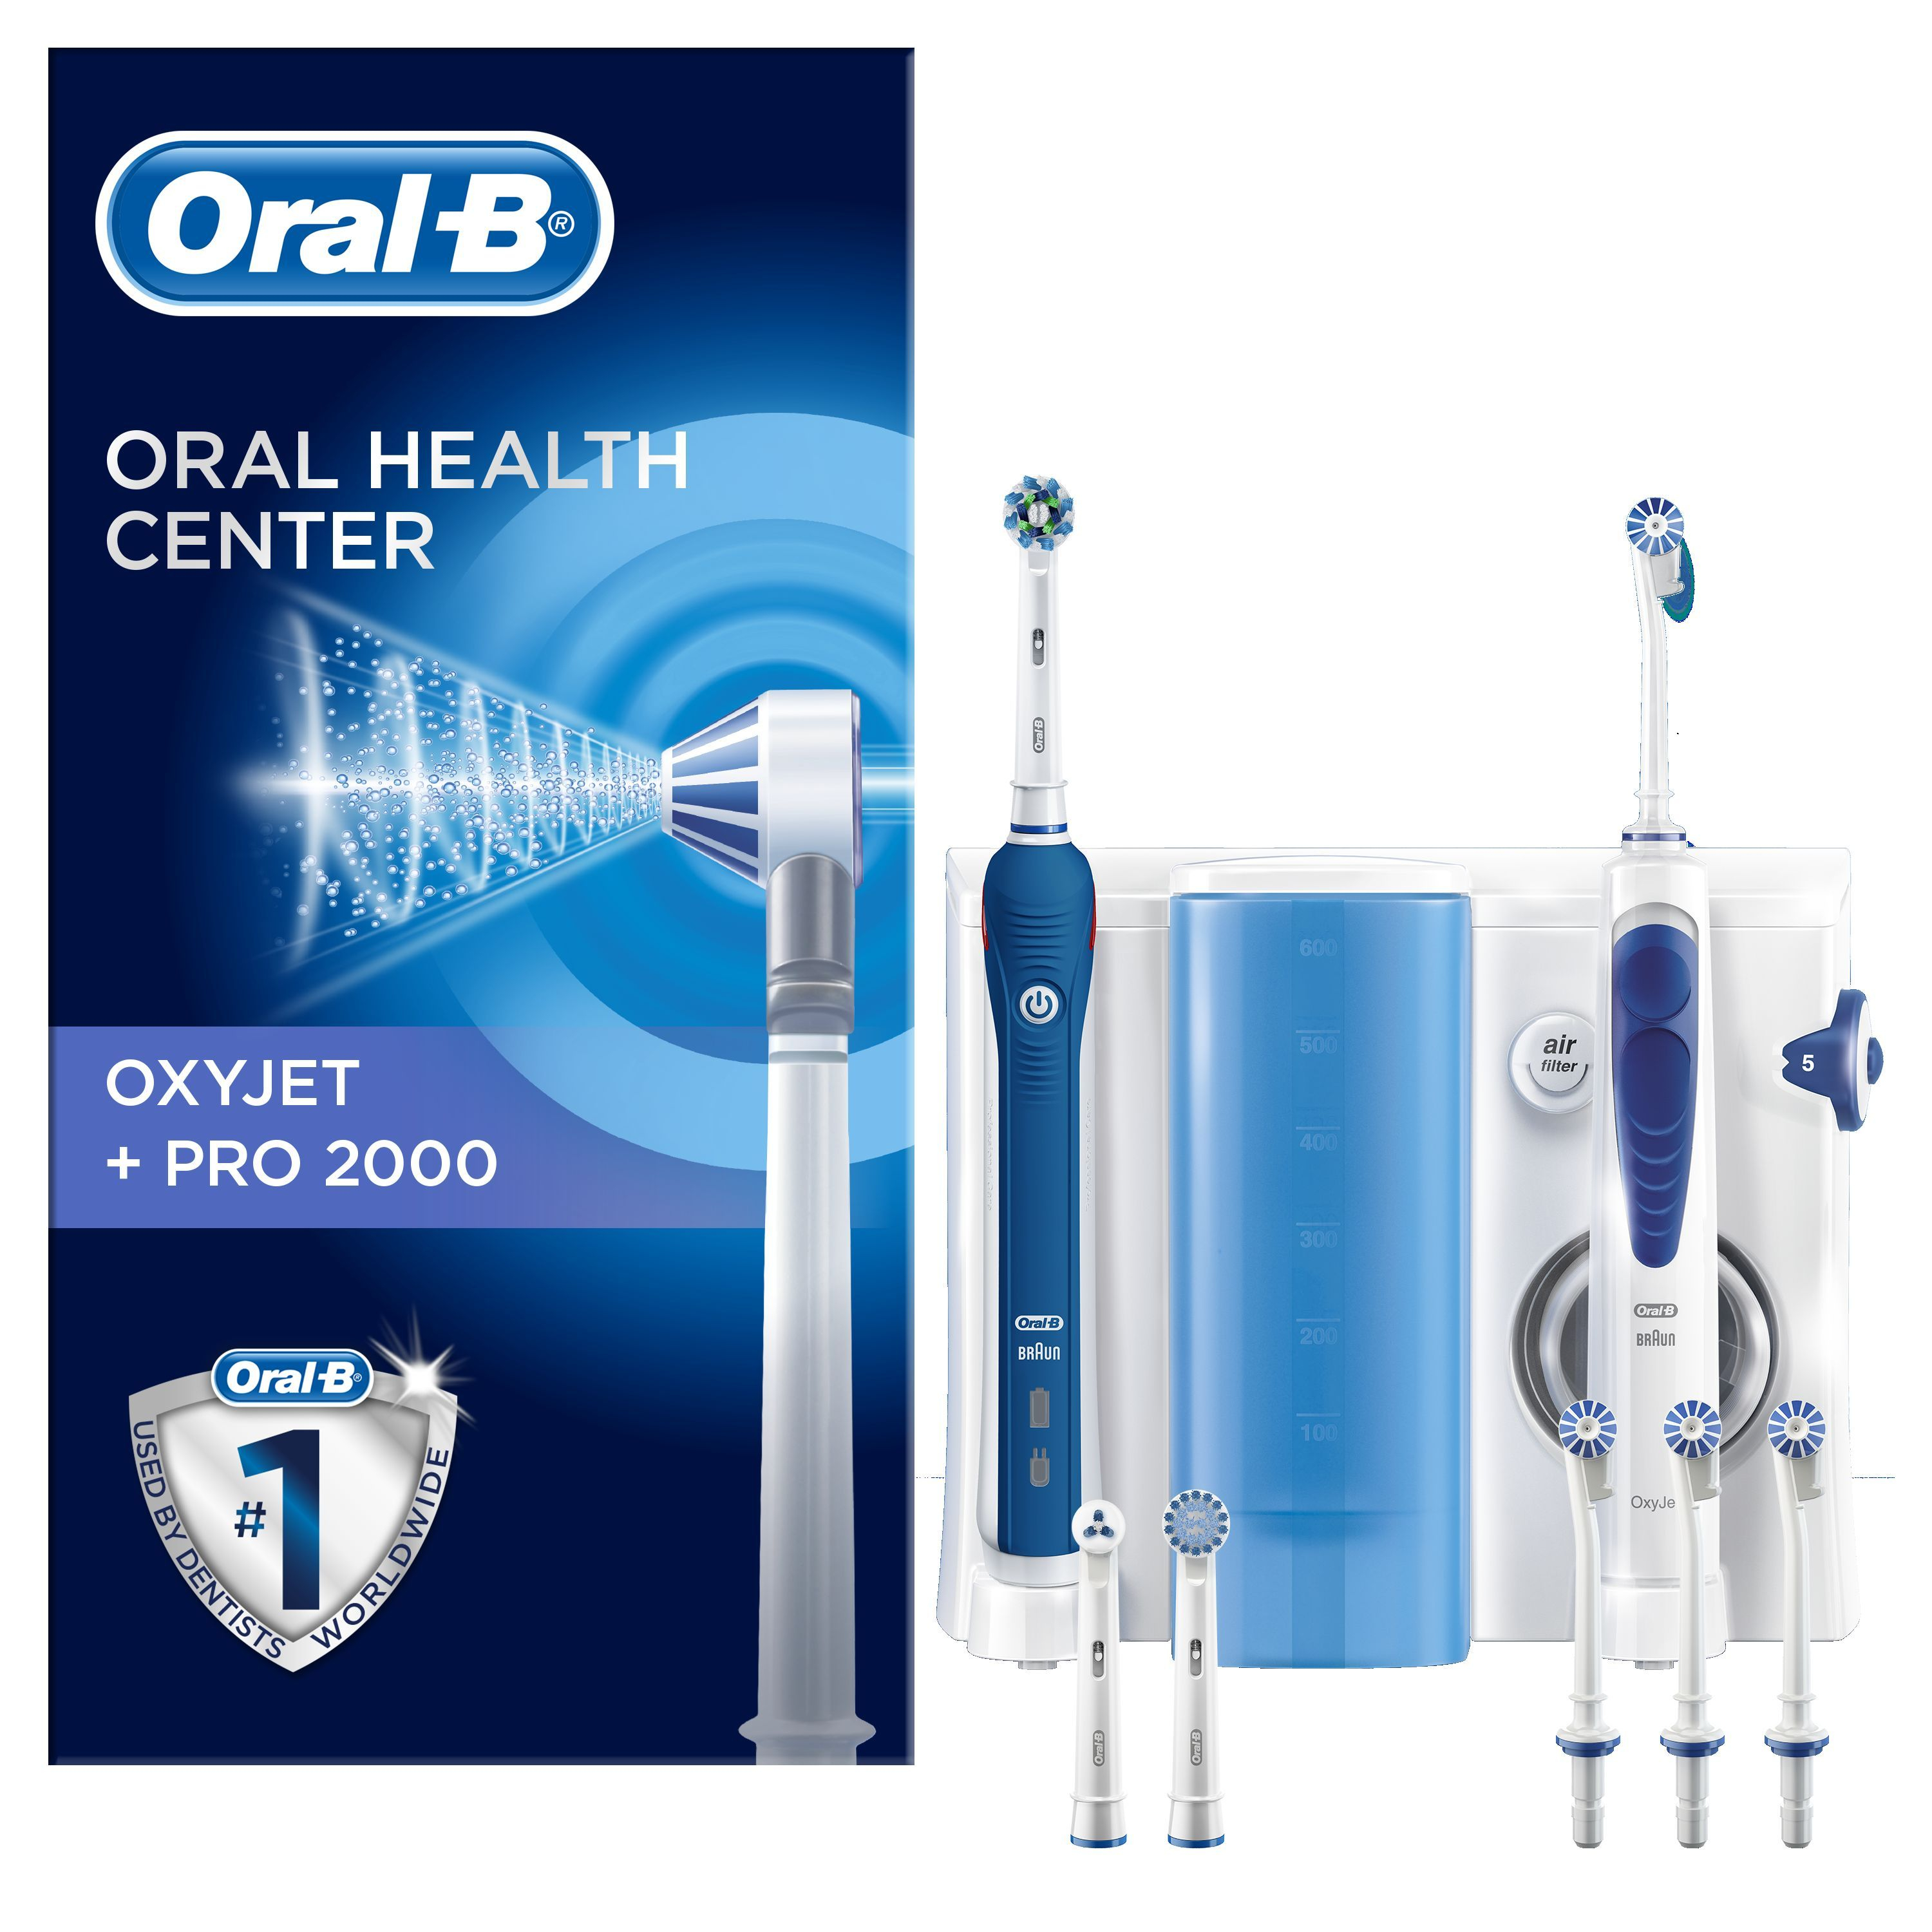 Oral-B Oxyjet + PRO 2000 ústní centrum Oral-B